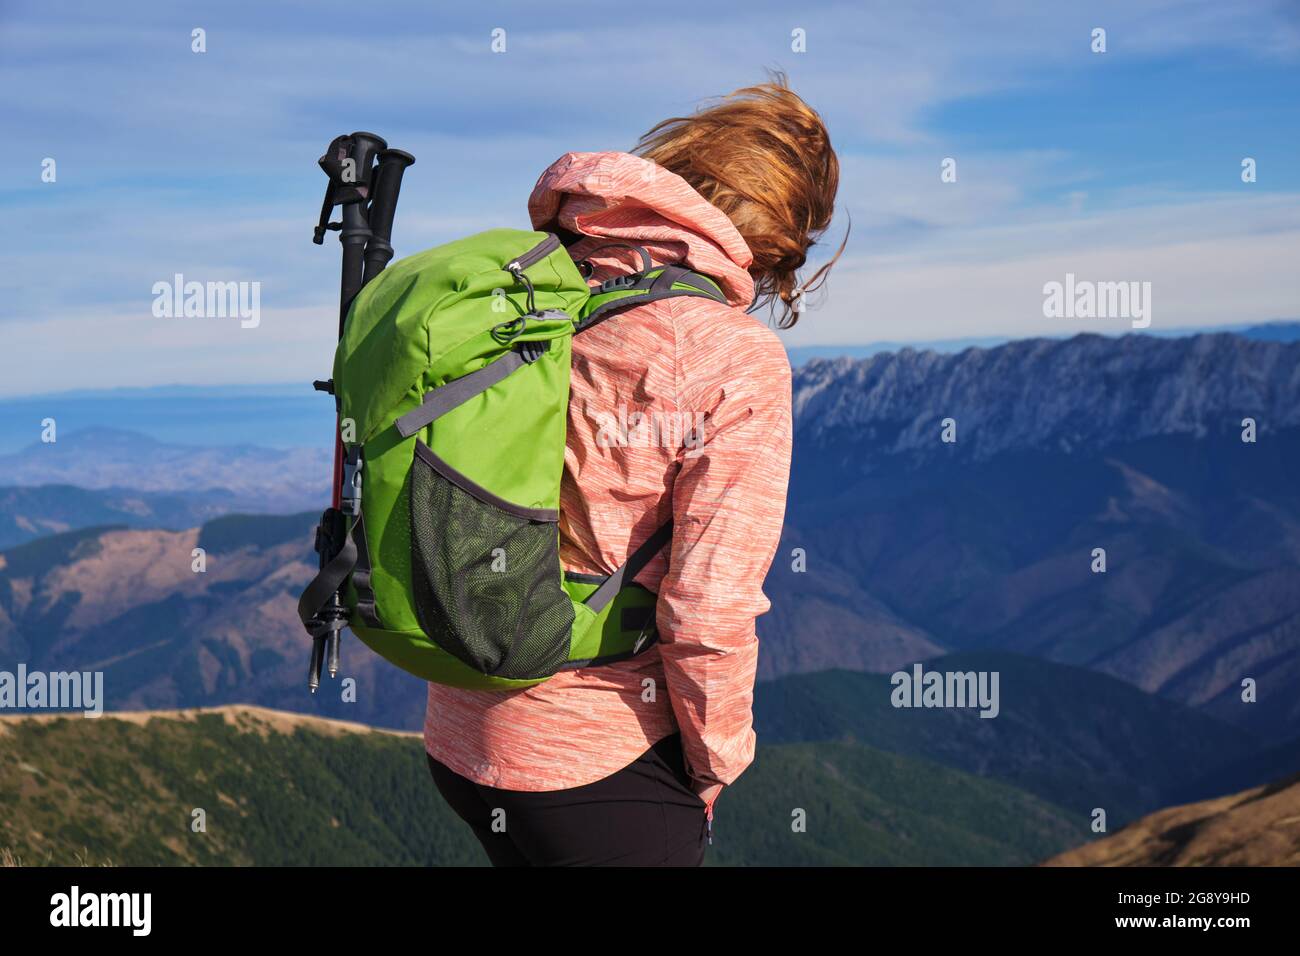 Ragazza escursionista con zaino verde e bastoni da trekking nelle montagne dei Carpazi. Foto Stock